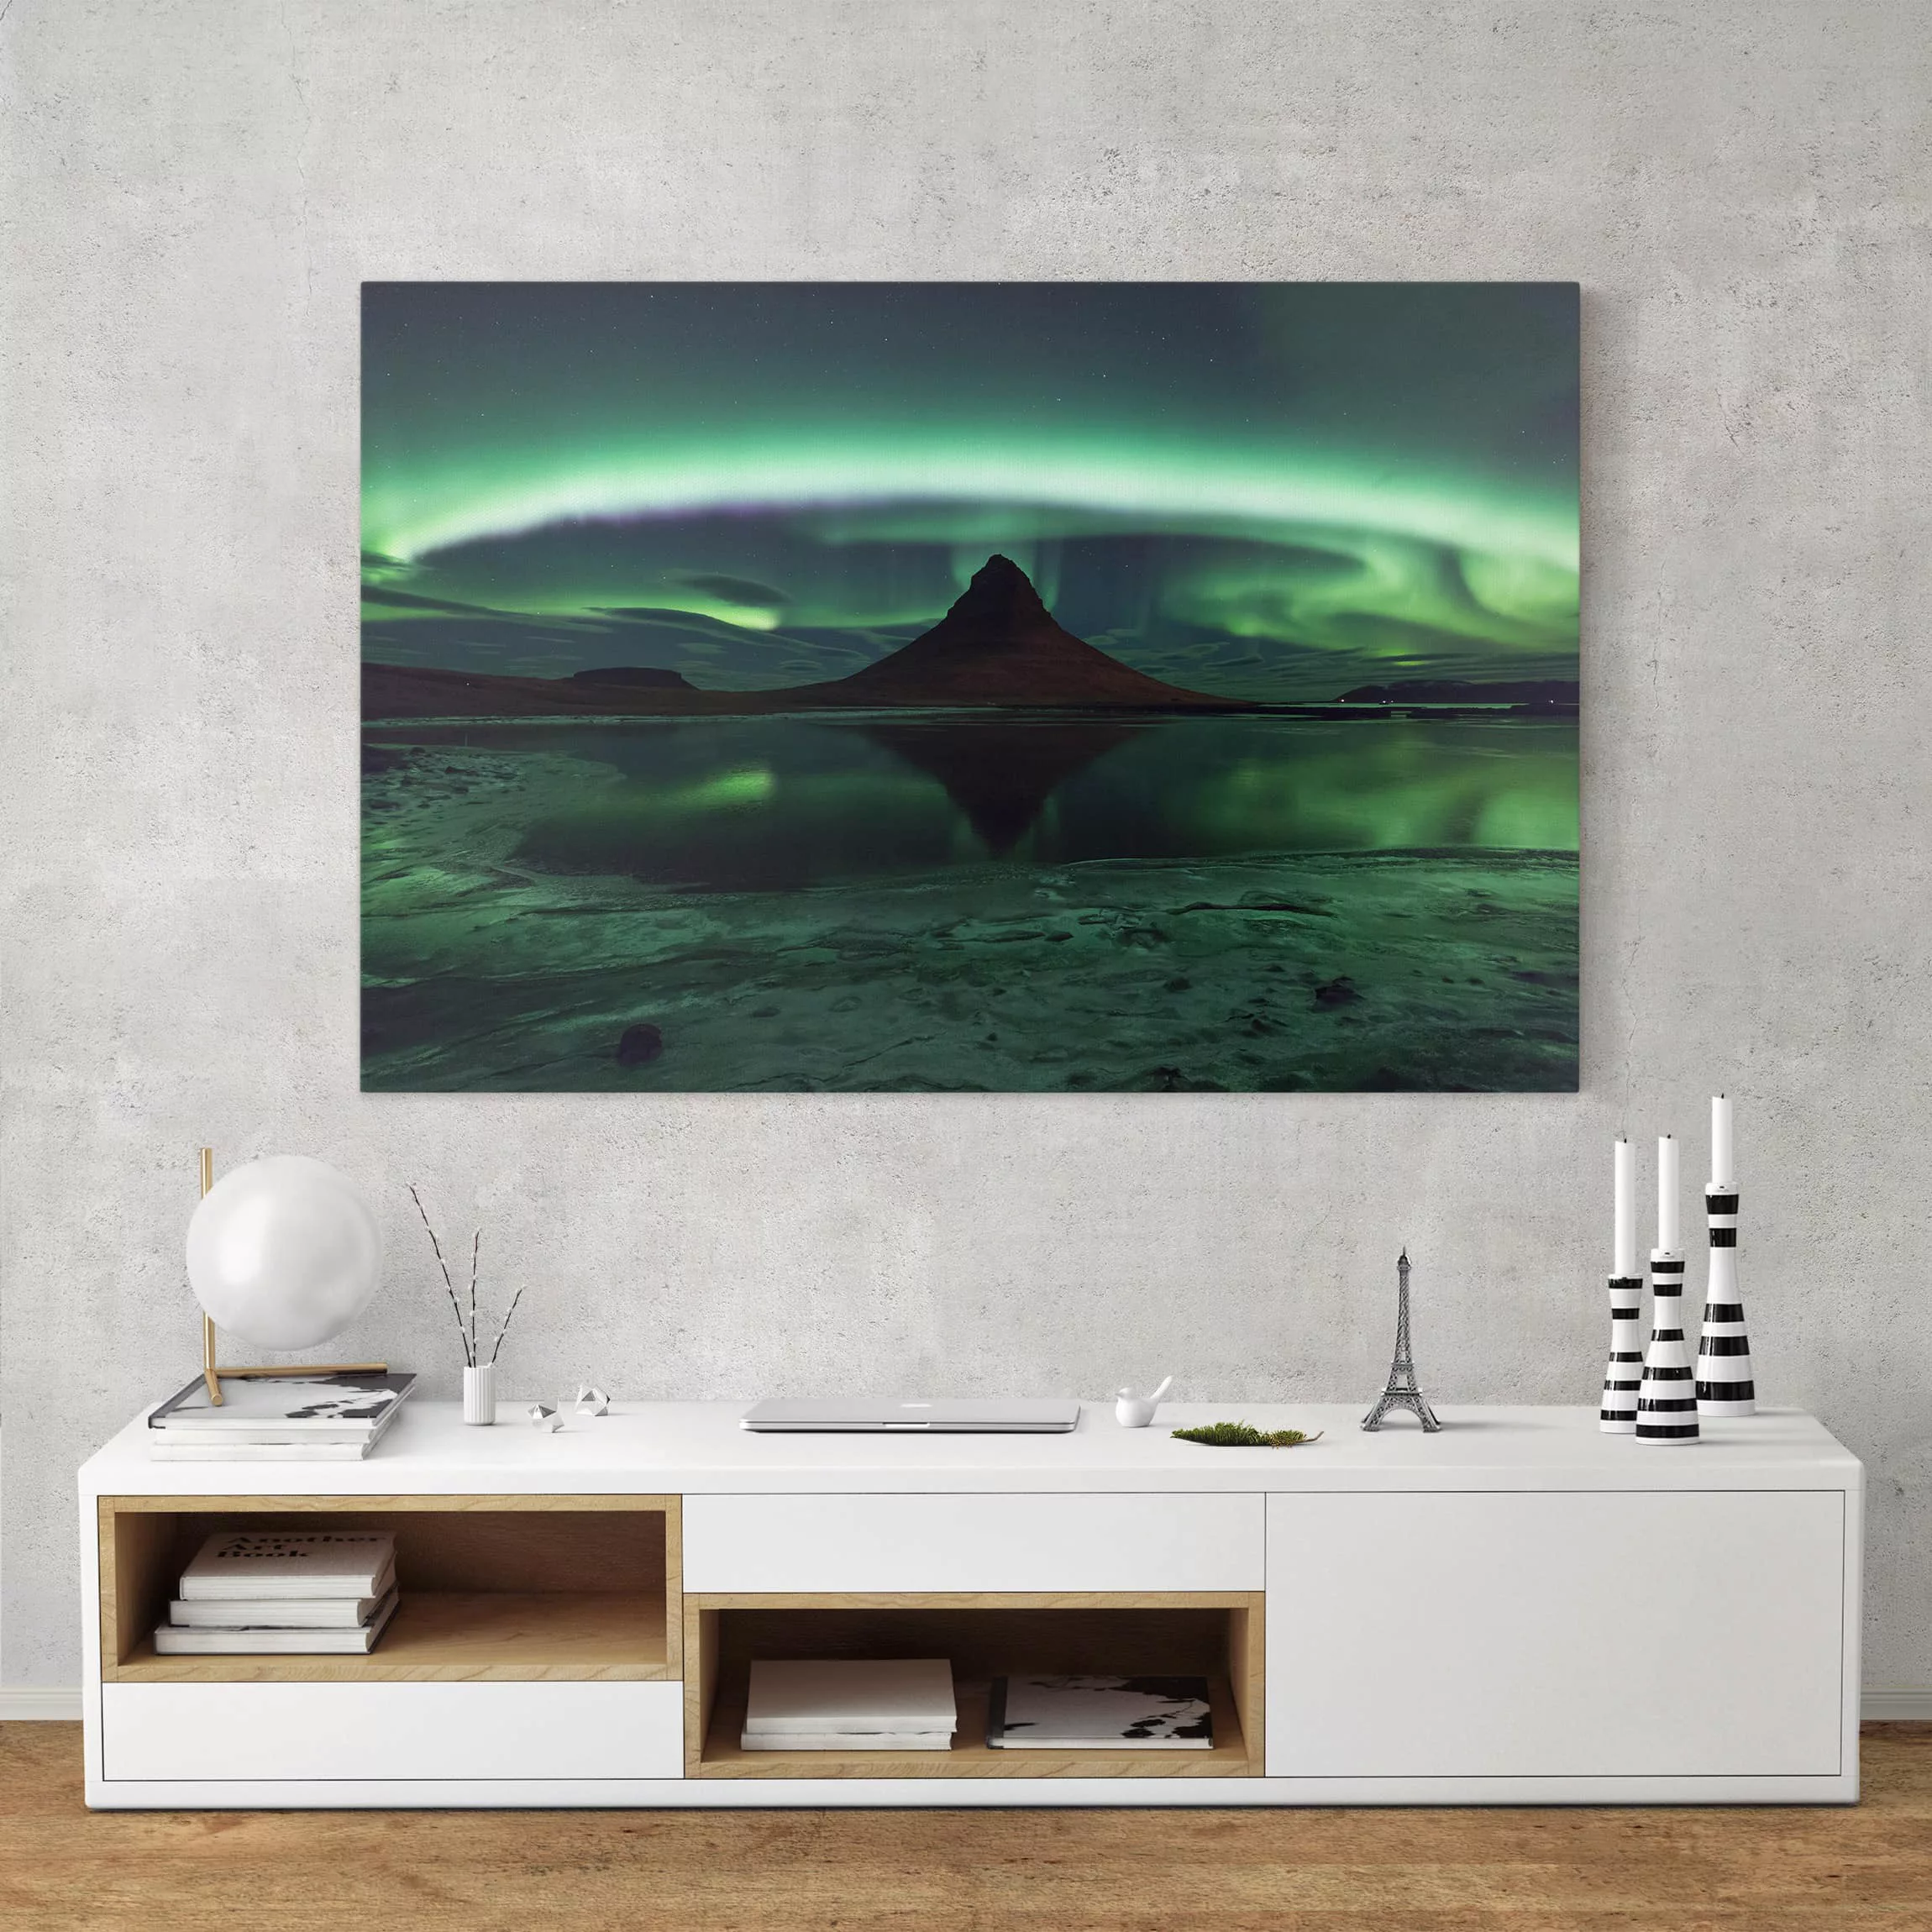 Leinwandbild Berg - Querformat Polarlicht in Island günstig online kaufen